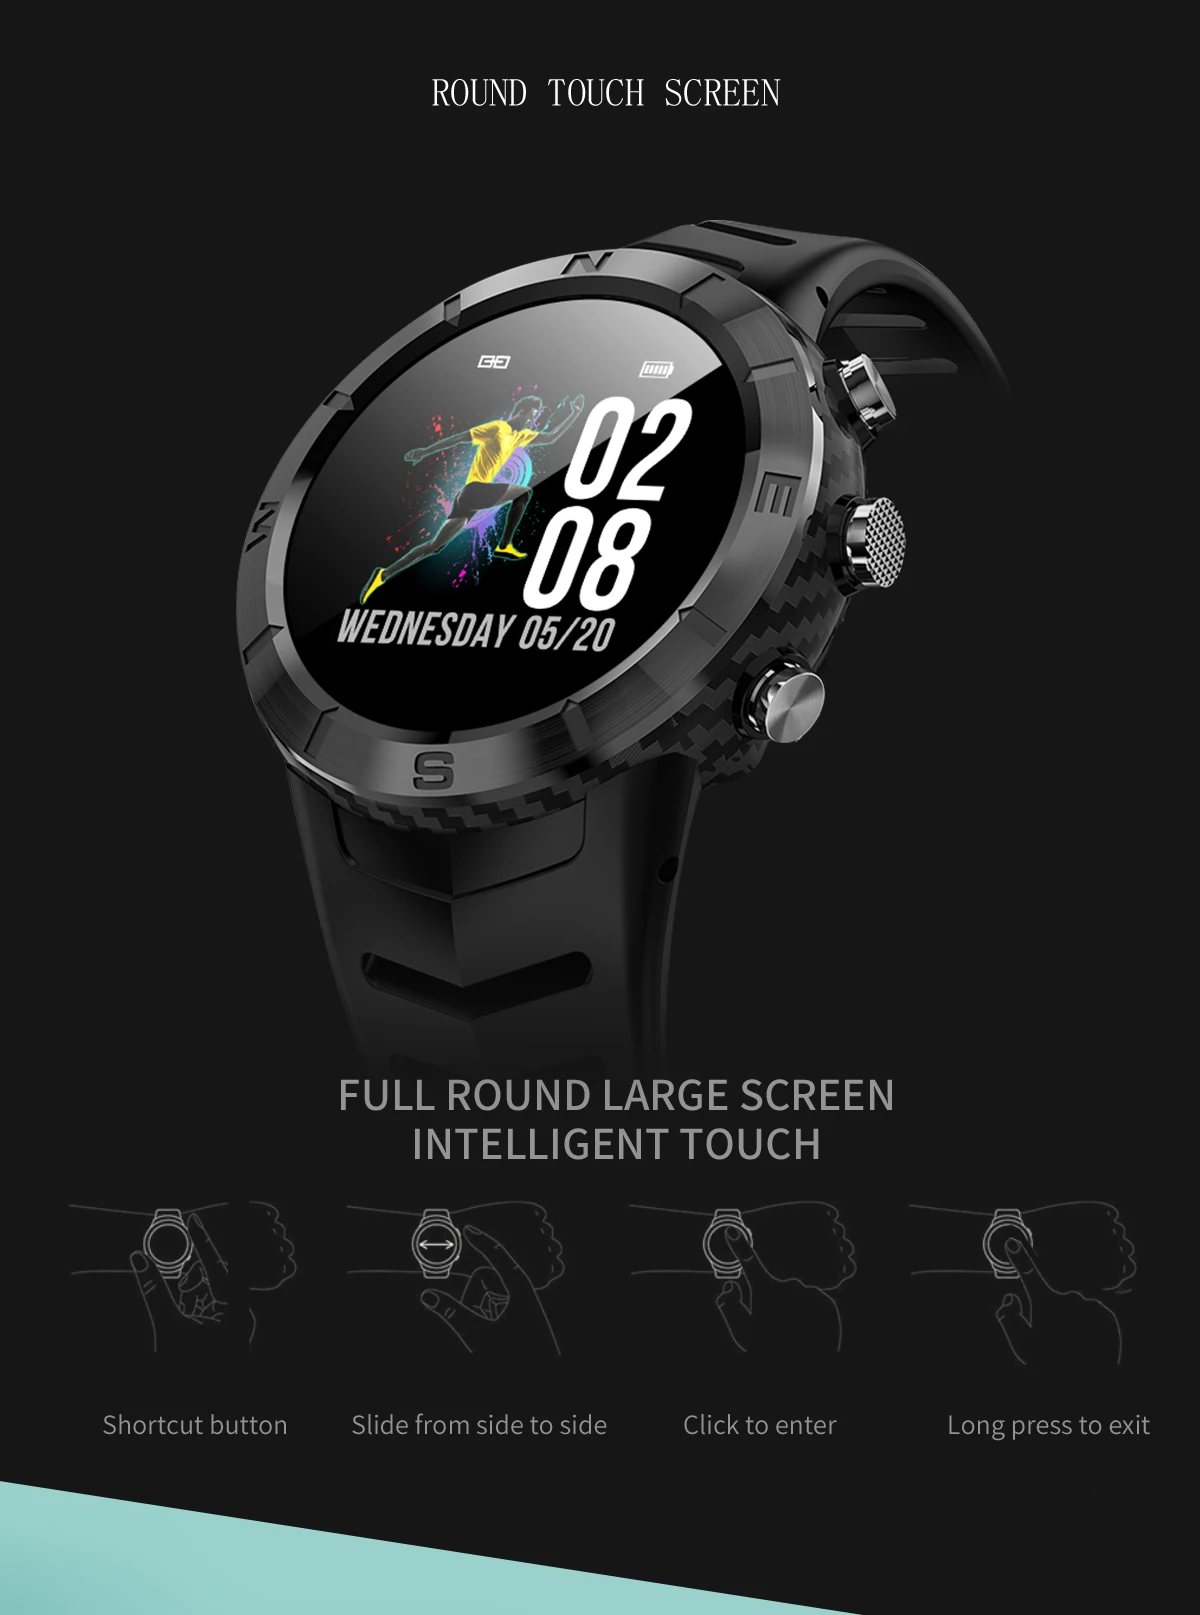 696 DT08 круглый сенсорный экран спортивные Смарт часы мужские водонепроницаемые IP67 сердечного ритма кровяное давление умные часы с функцией мониторинга сна женщин